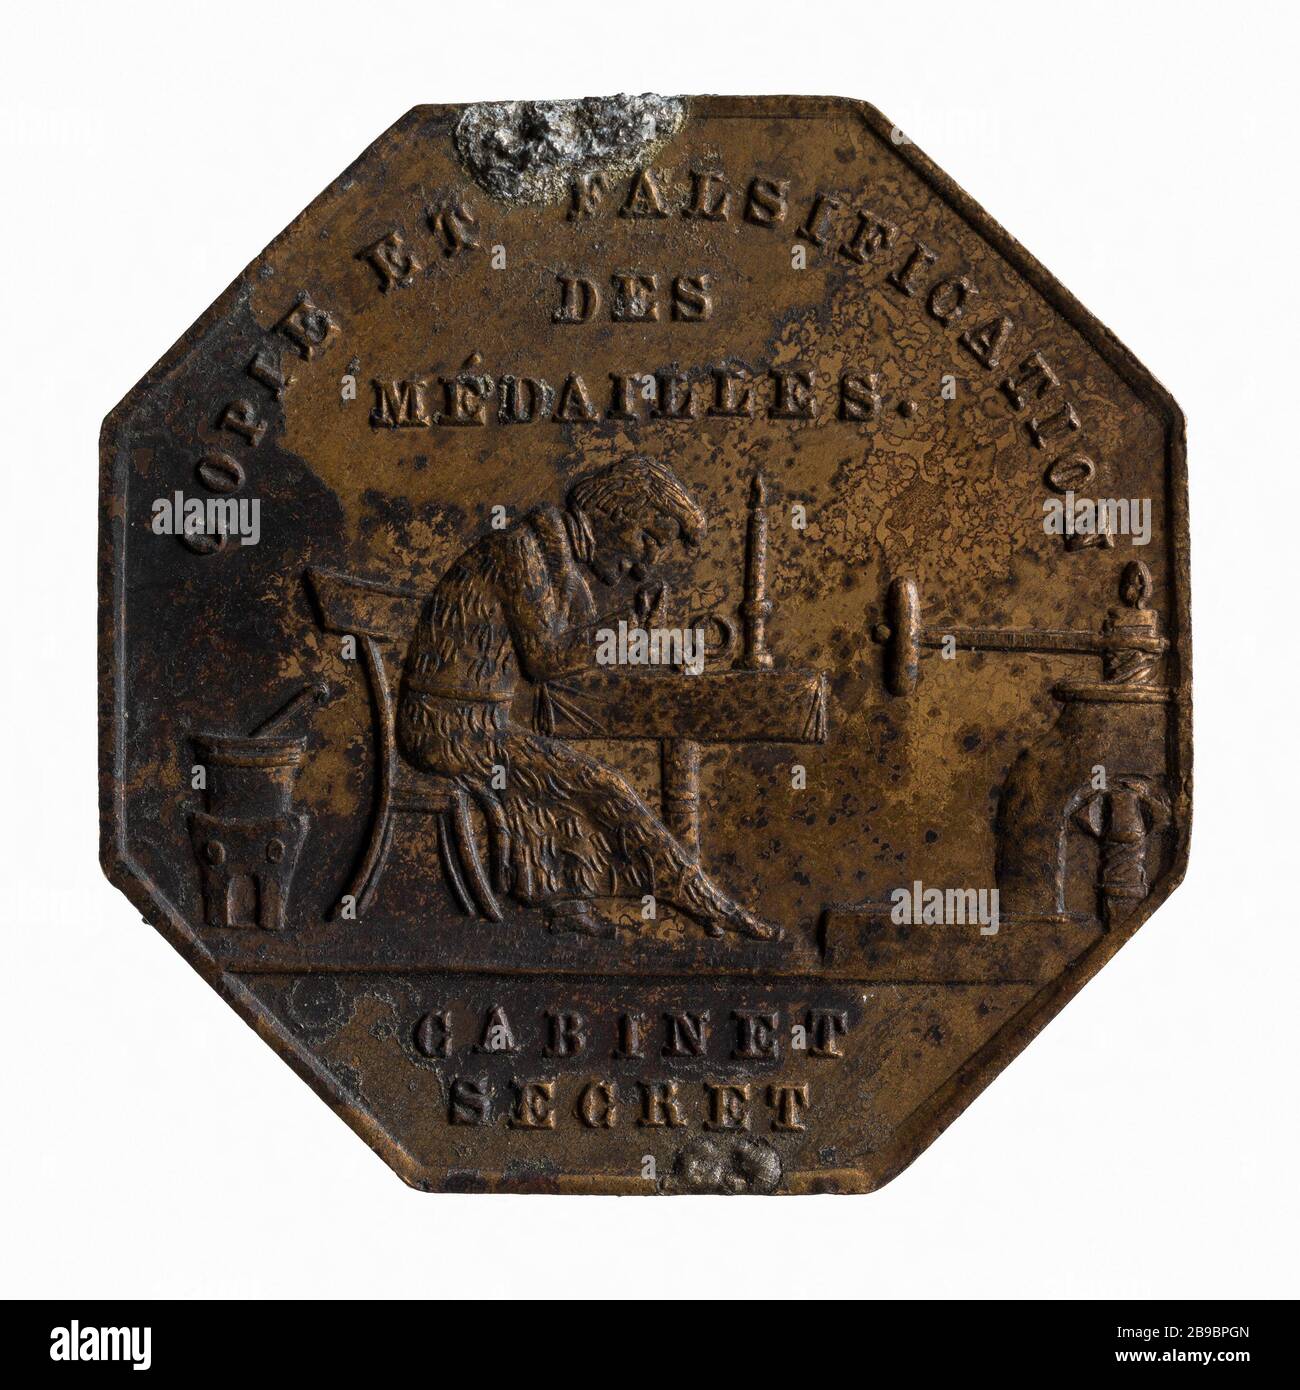 Denunciation of falsifying medals, 21 December 1848 (dummy Title) Anonyme. Dénonciation de la falsification de médailles, 21 décembre 1848. Paris, musée Carnavalet. Stock Photo